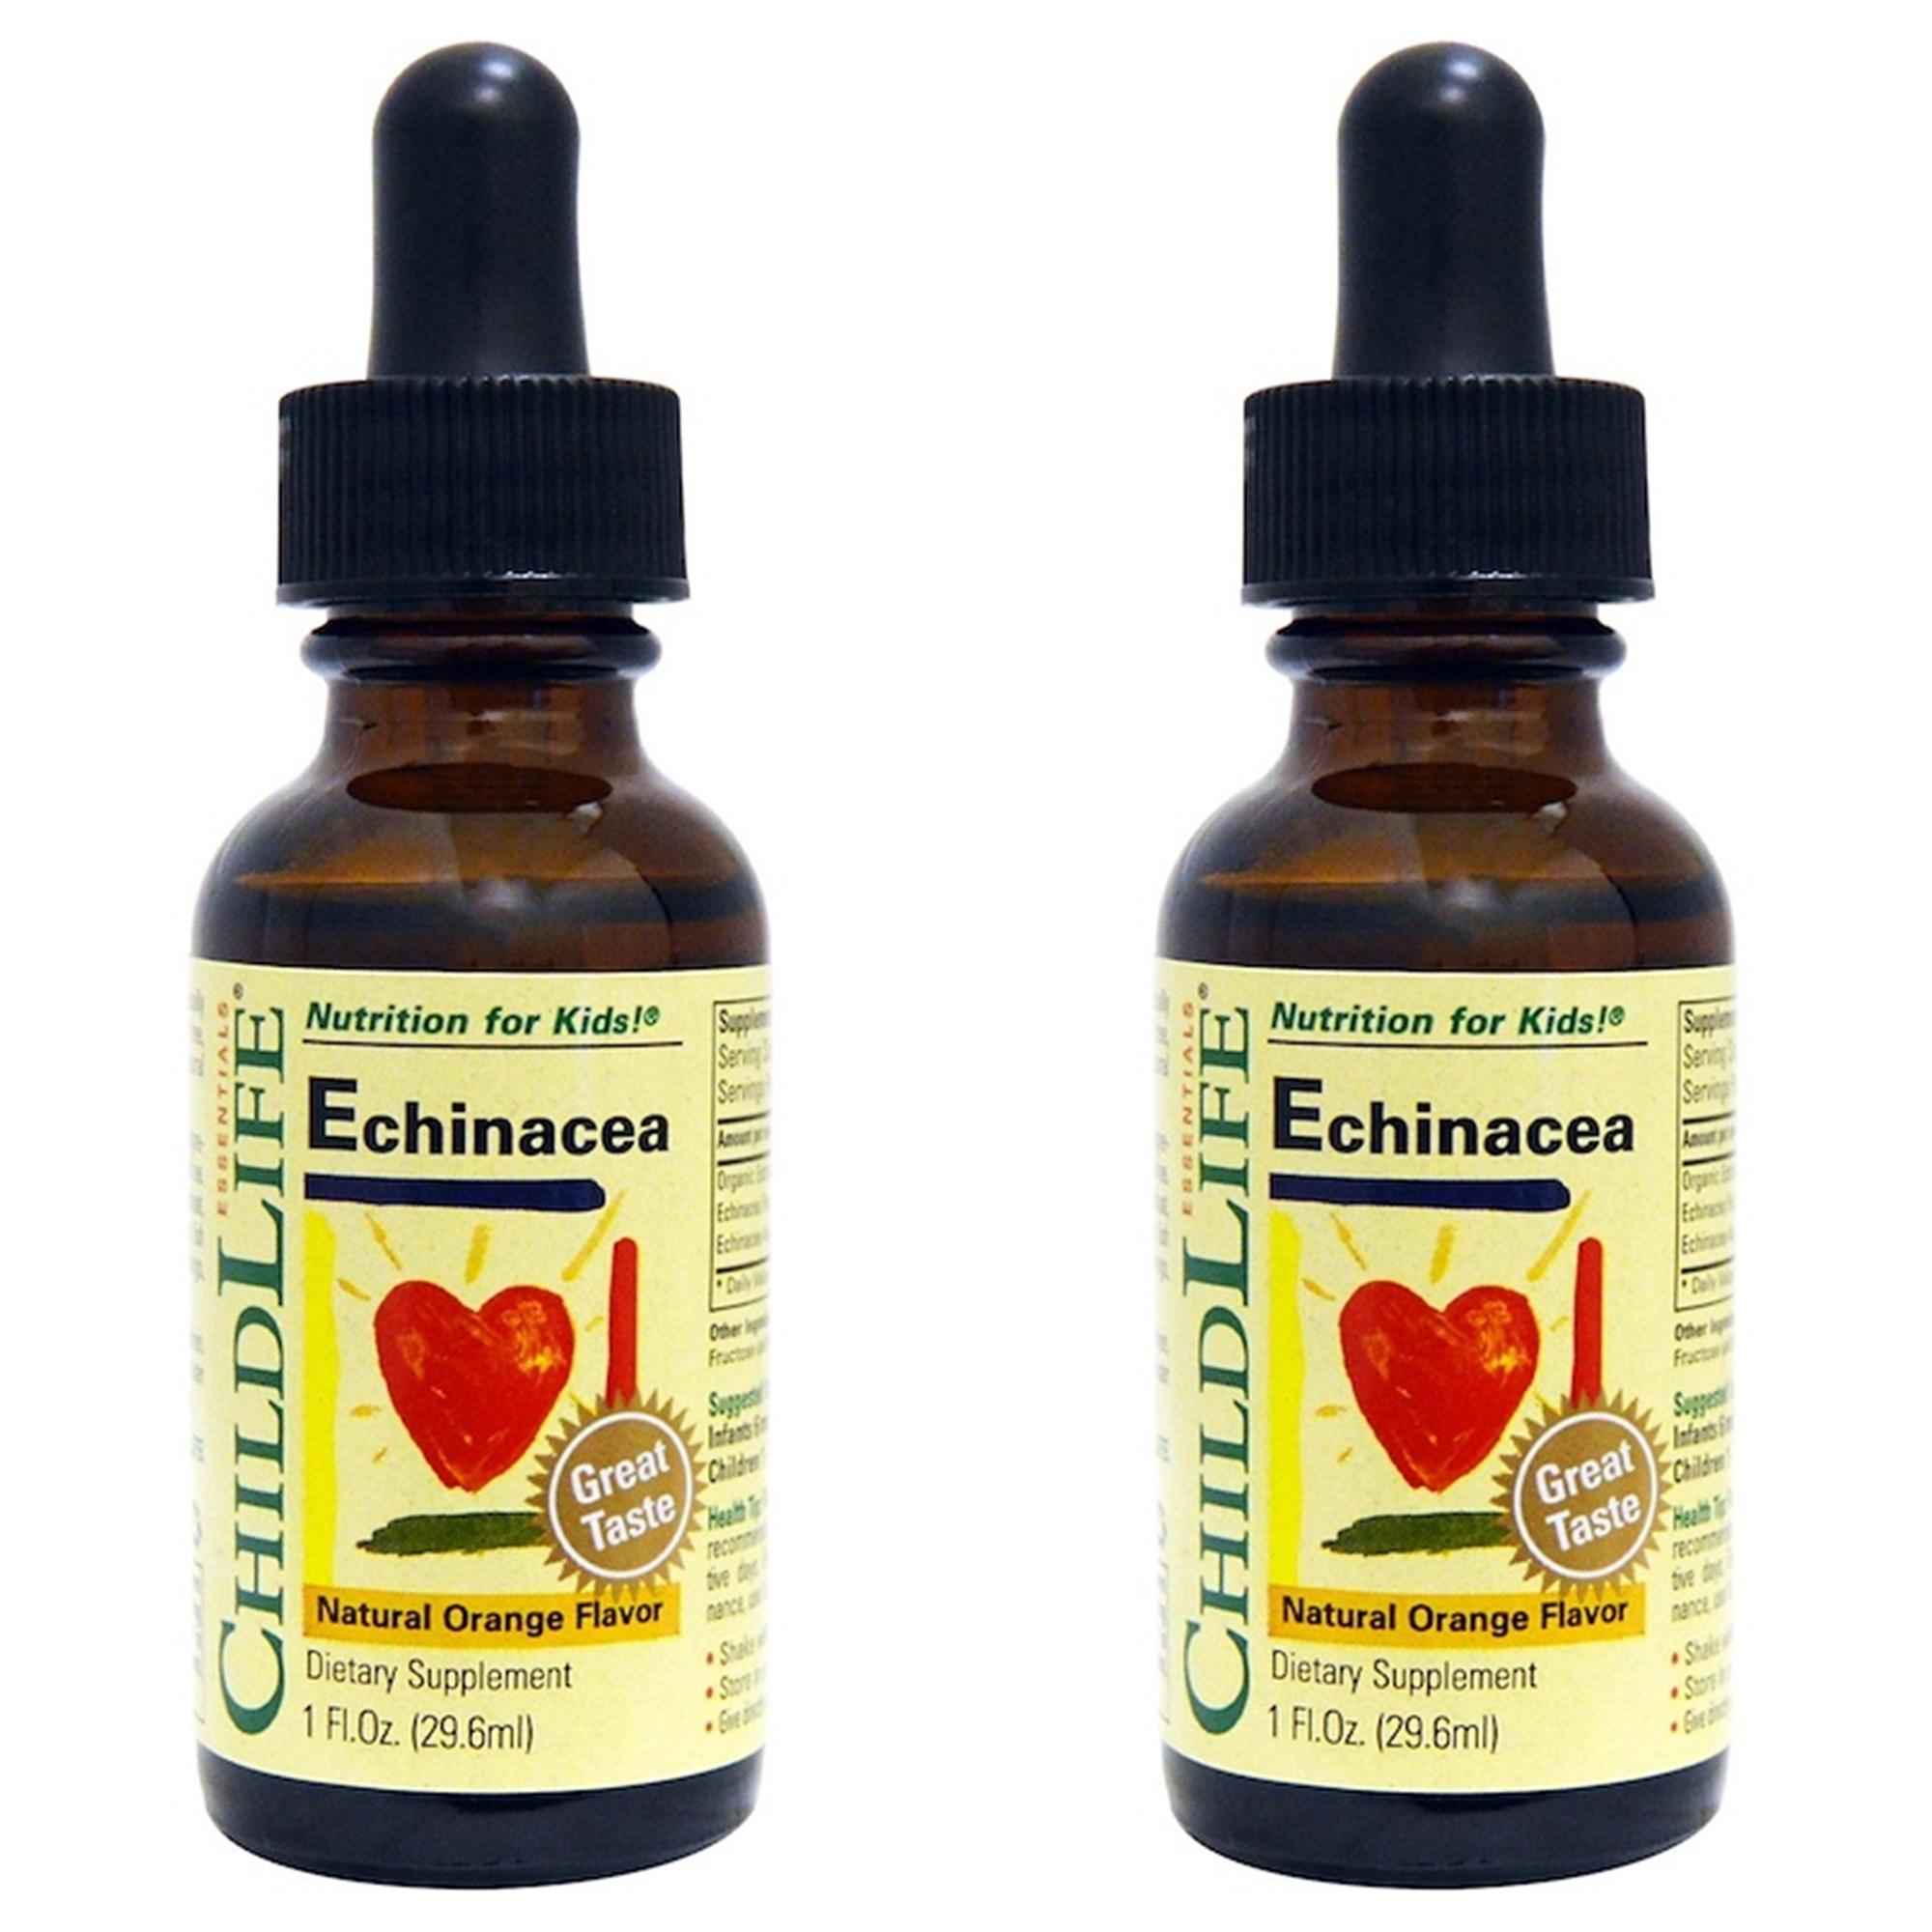 ChildLife Essentials Echinacea Natural Orange Flavor 1 fl oz